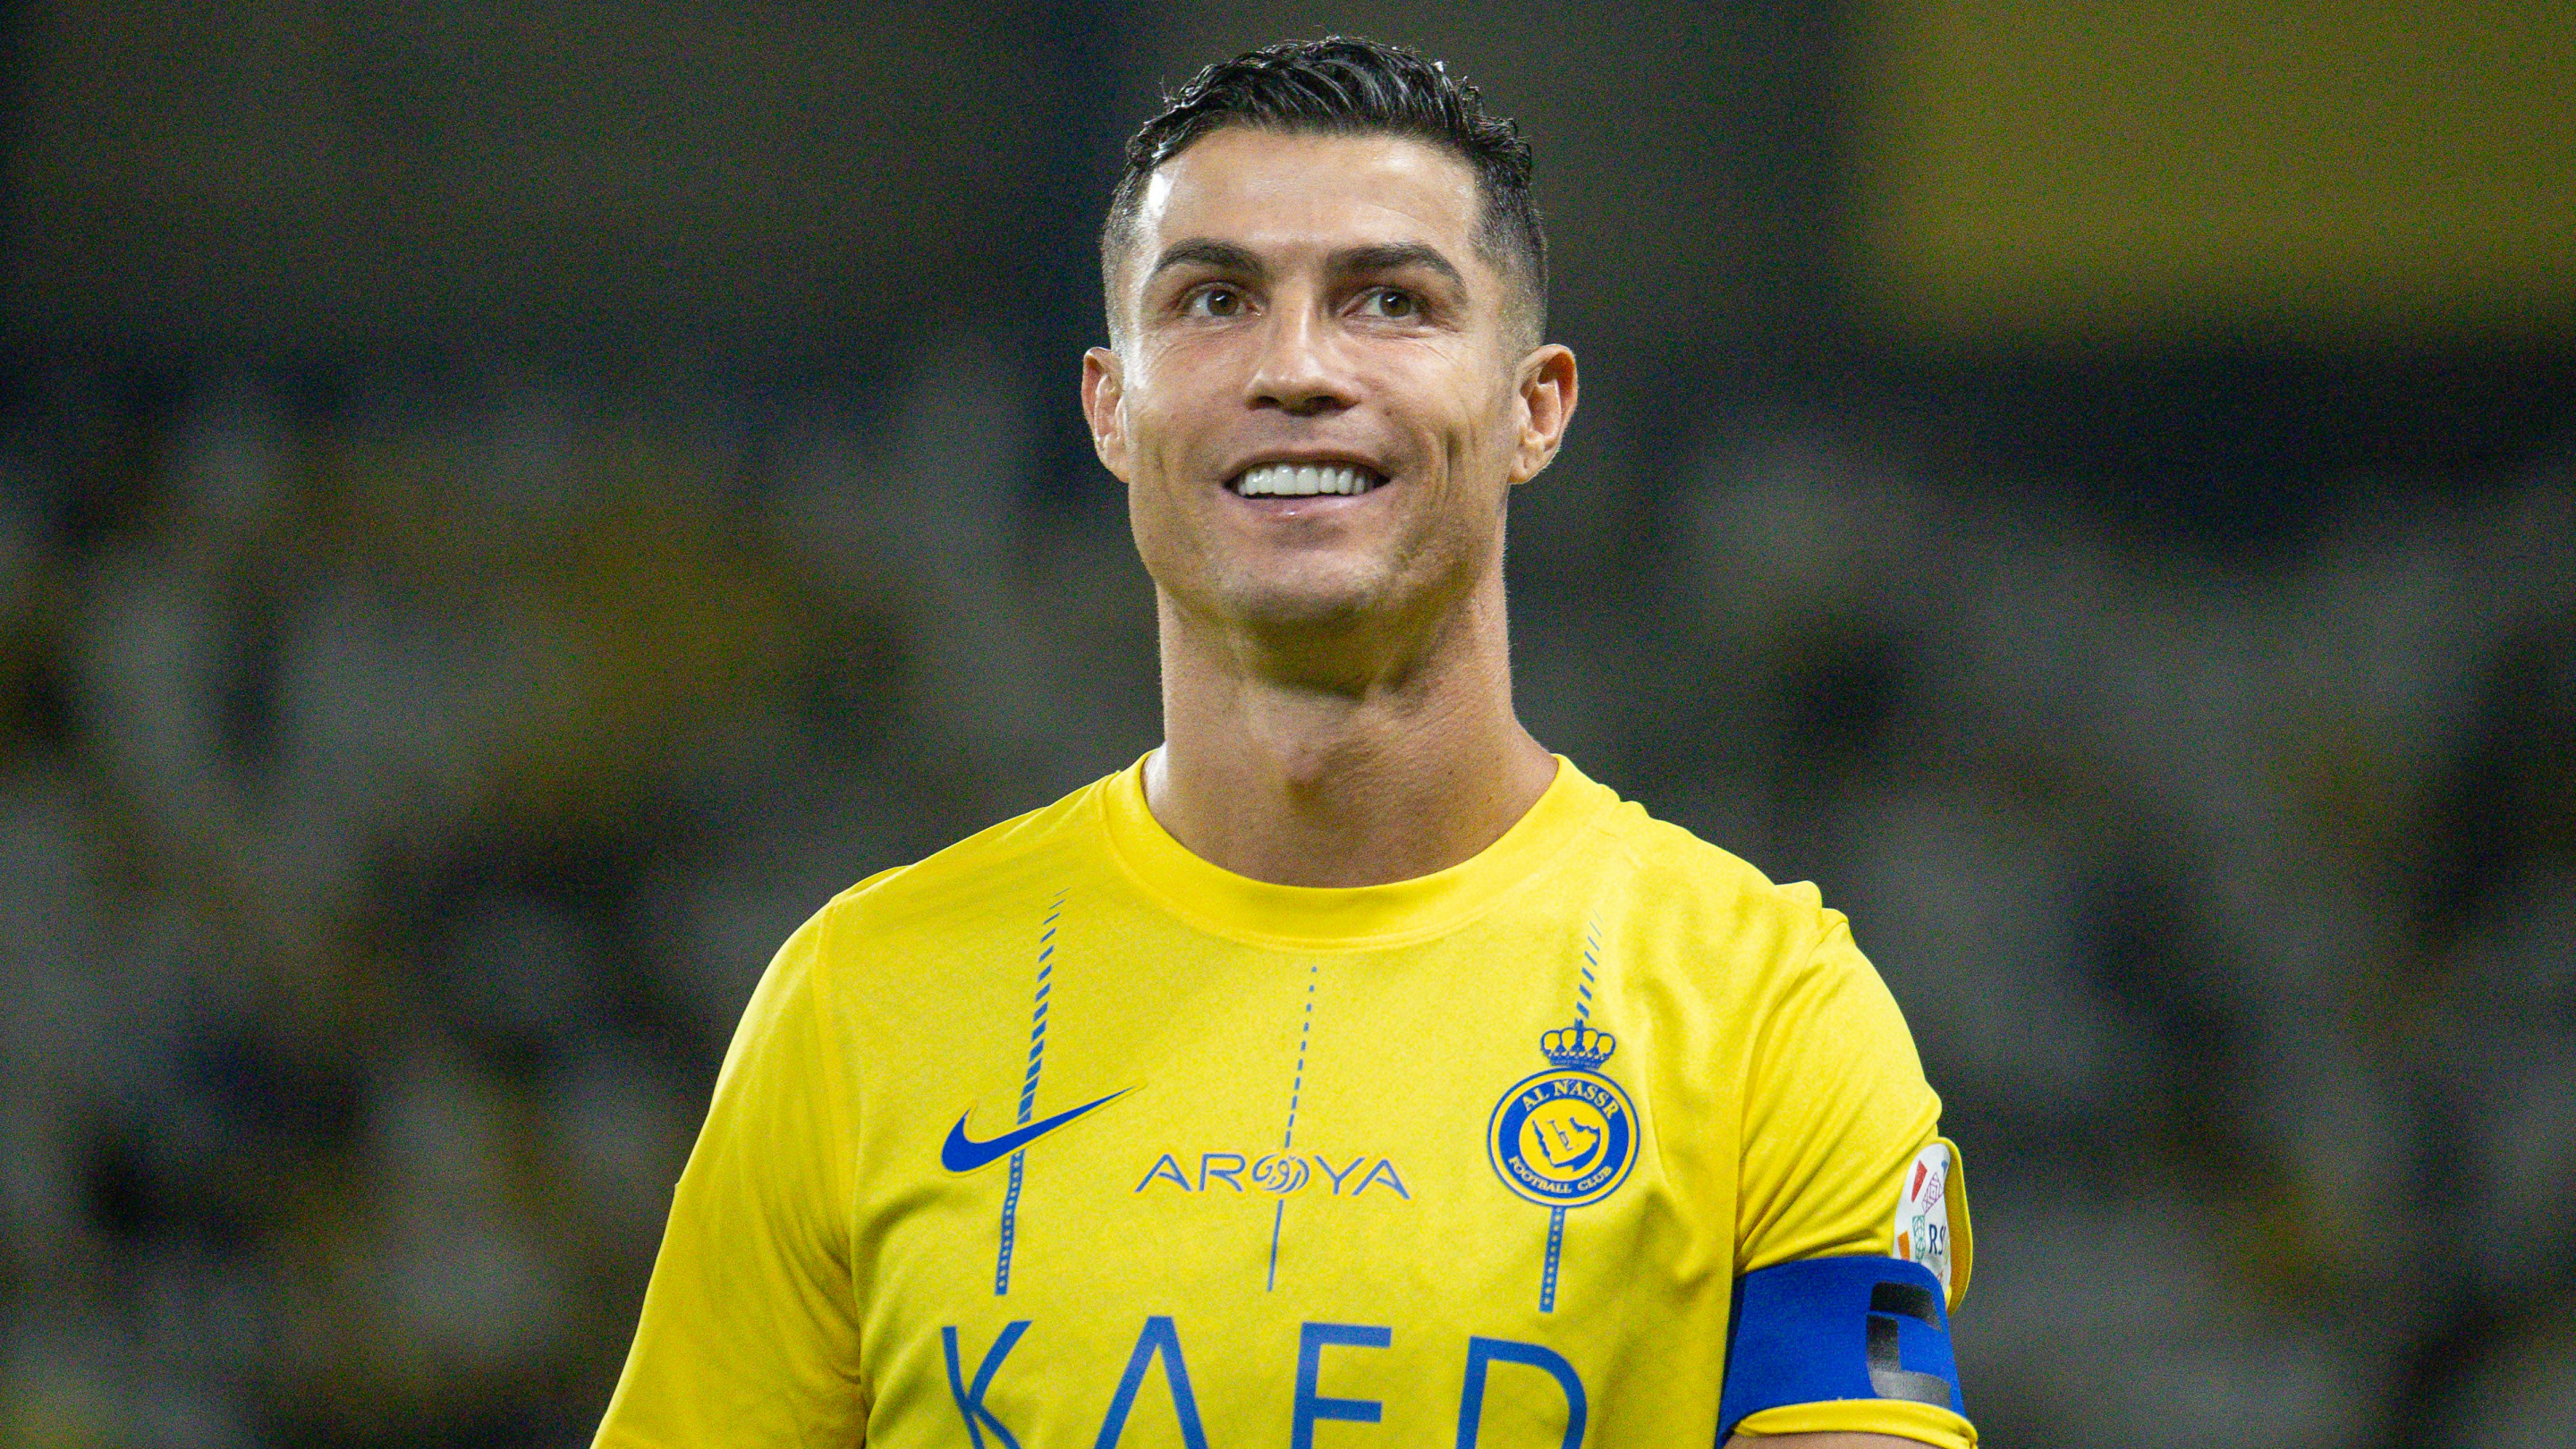 Premier League : La prédiction incroyable de Cristiano Ronaldo sur le futur champion d'Angleterre